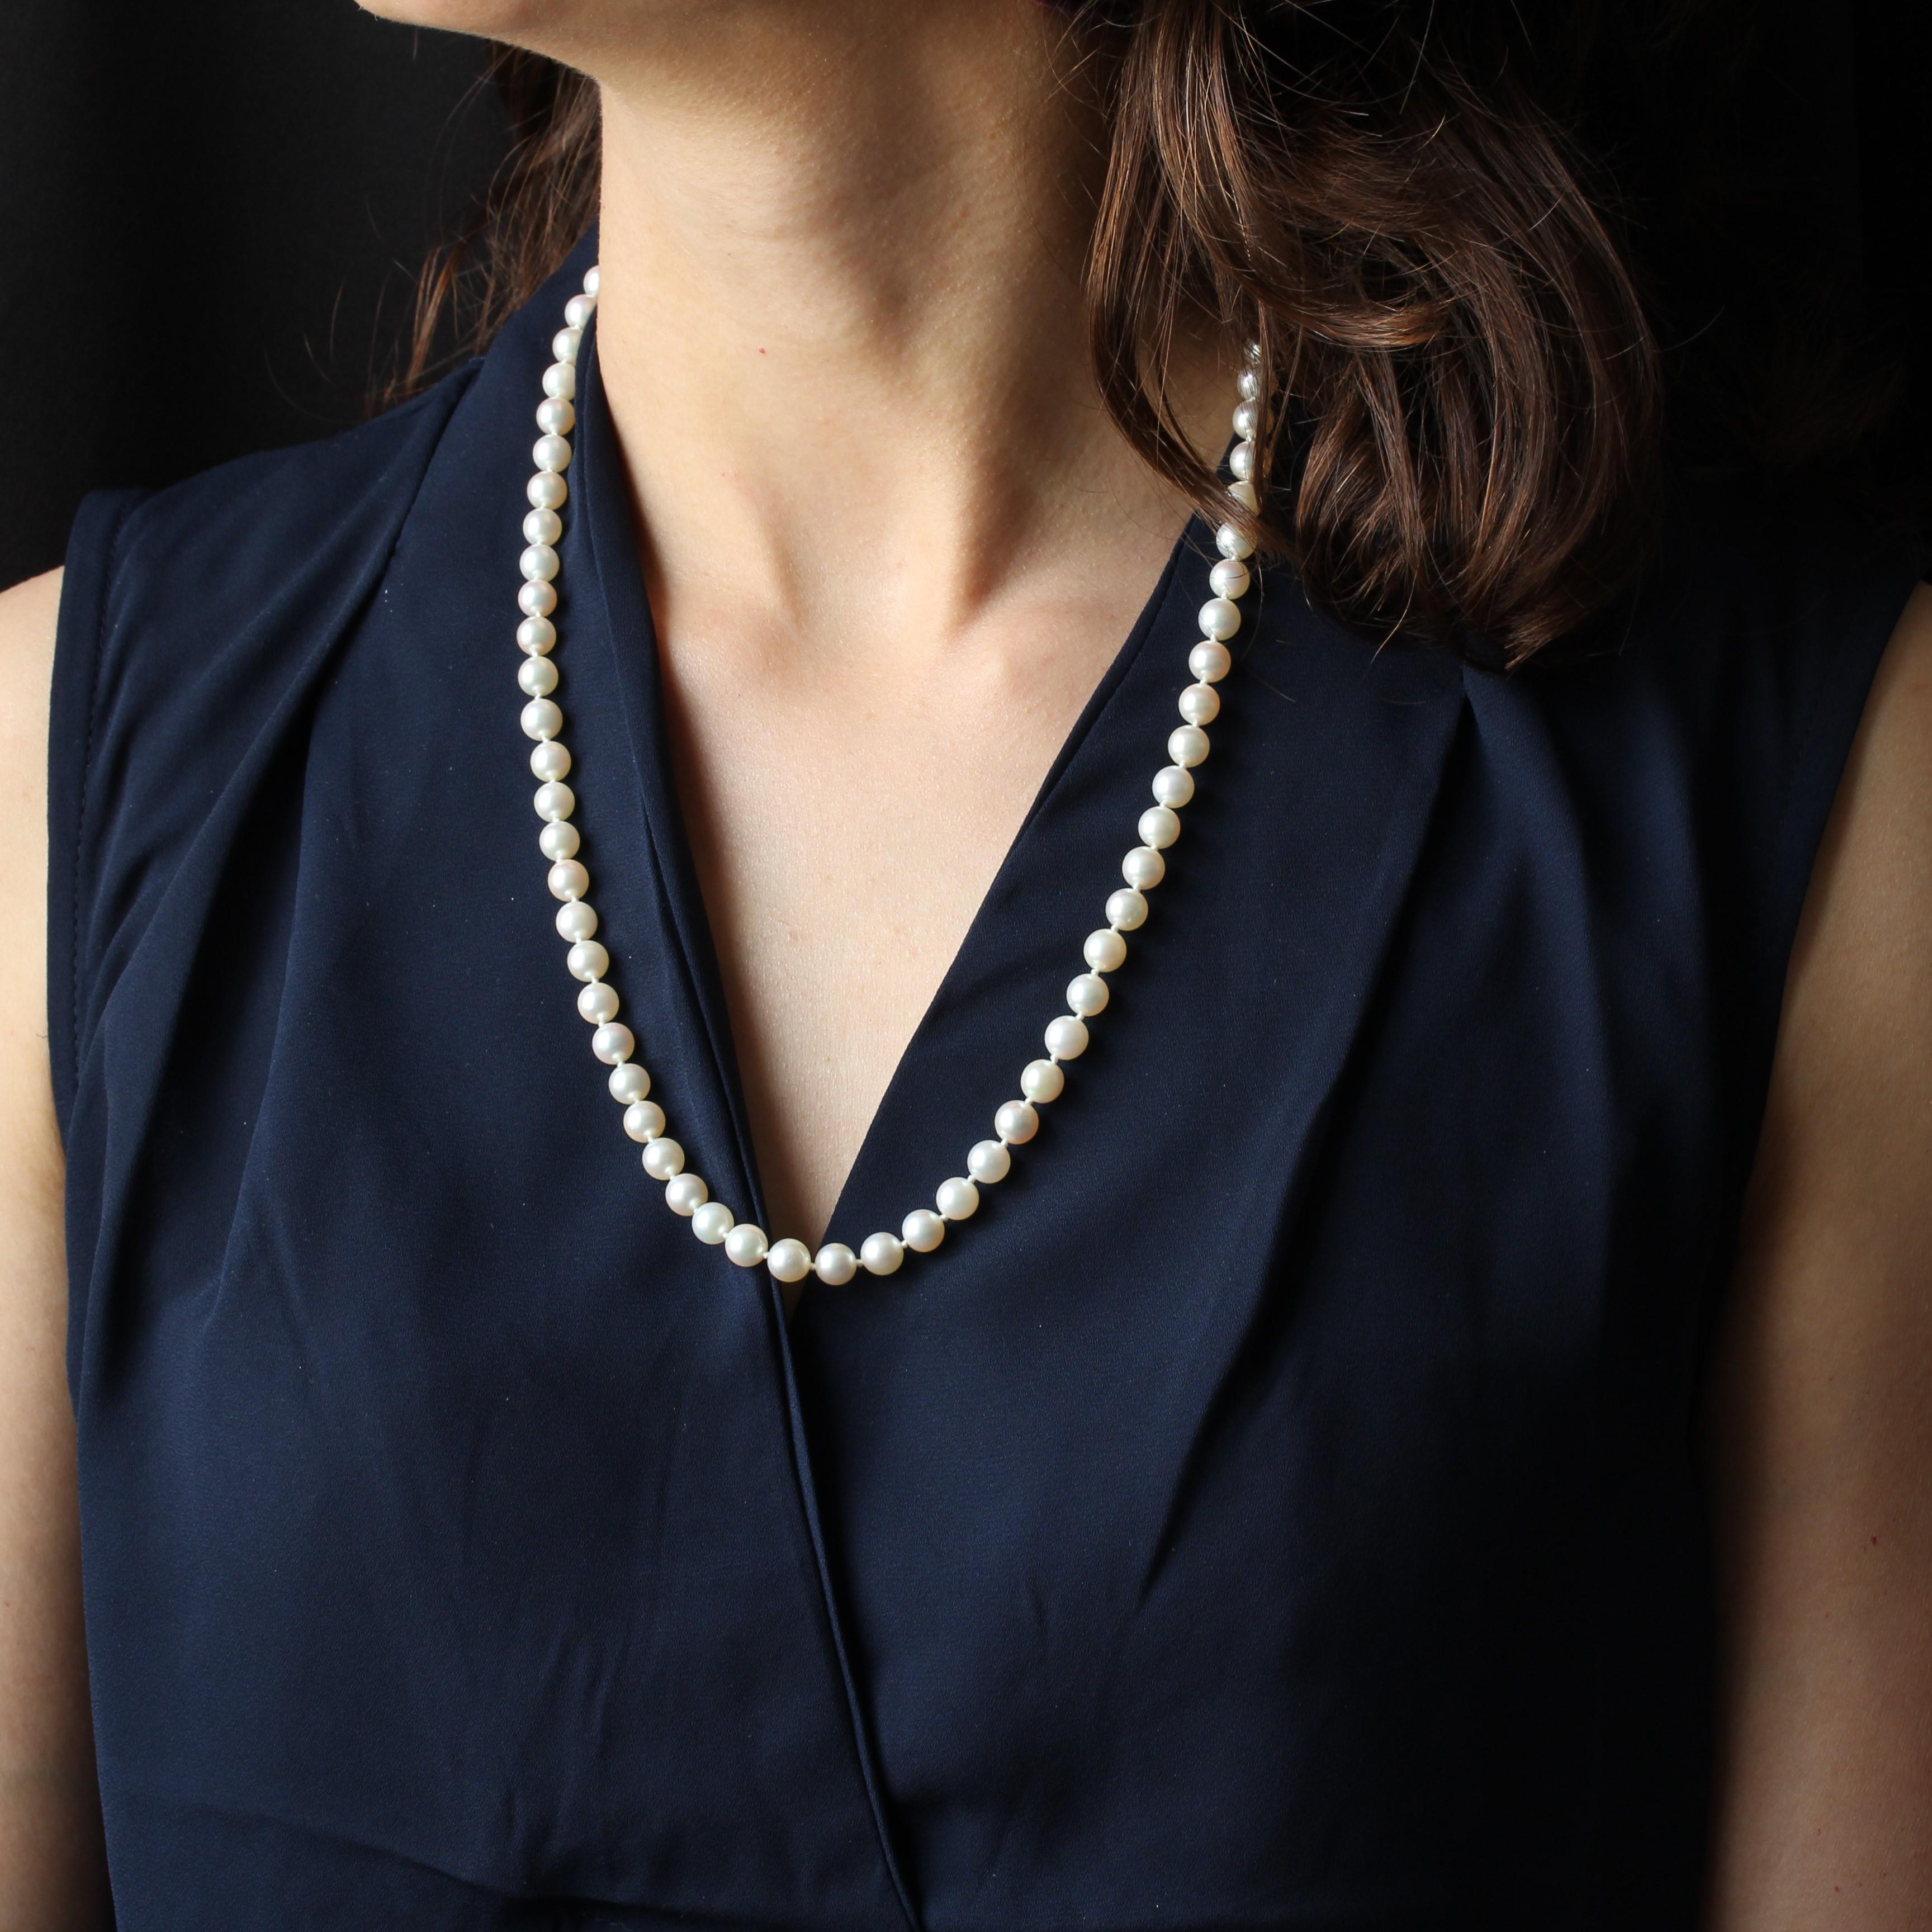 Collier composé de perles de culture blanches japonaises en chute. Le fermoir est caché dans une perle ovale à l'extrémité. Il est livré avec une chaîne de sécurité et un anneau à ressort en or blanc 18 carats.
Longueur : 58 cm
Diamètre des perles :